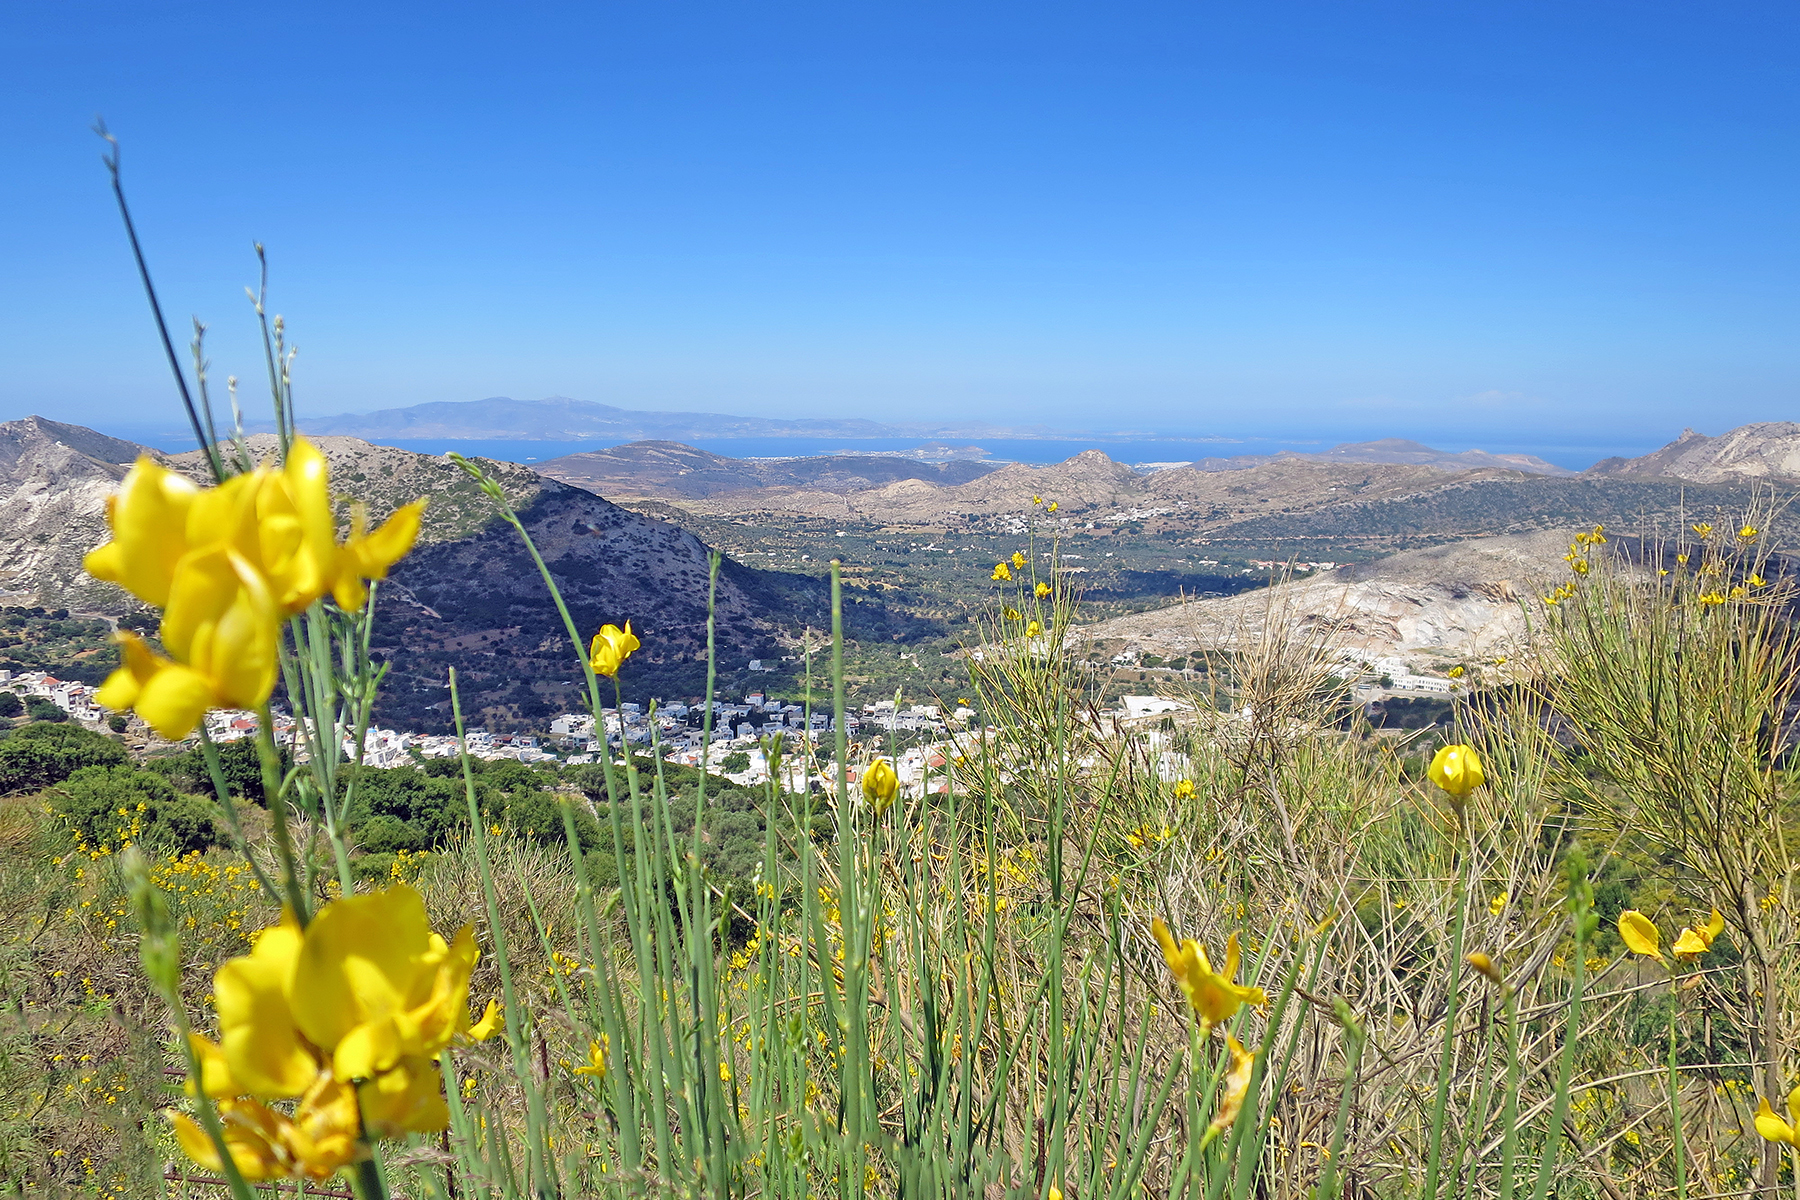 Kykladeninsel Naxos: Urlaub machen, wo Götter einst Geschichten erzählten 